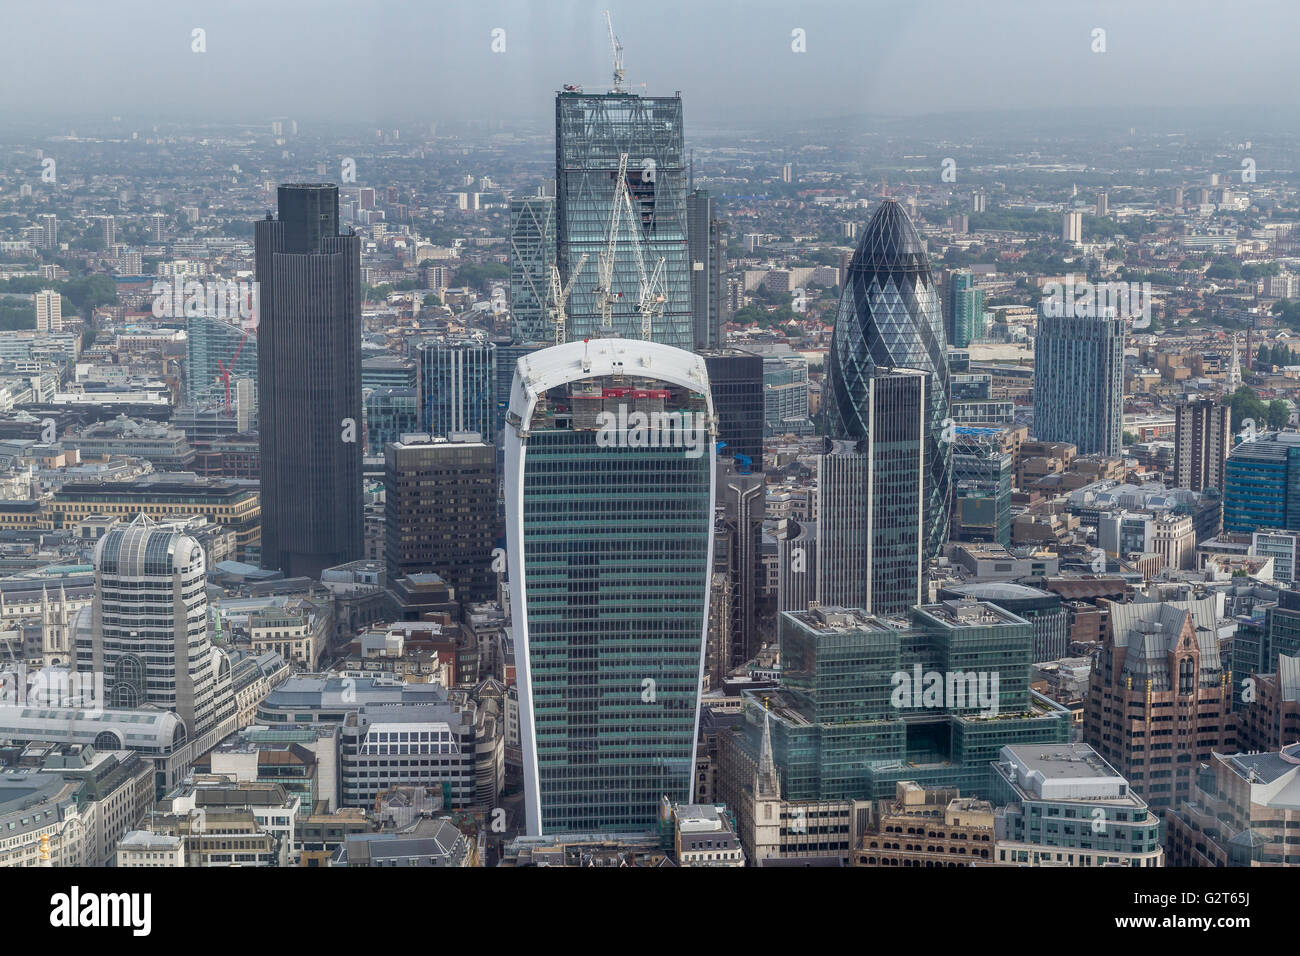 Vue aérienne de la ville de Londres avec 20 Fenchurch St , Leadenhall Building,Tower42 et le Gherkin, Londres, Royaume-Uni Banque D'Images